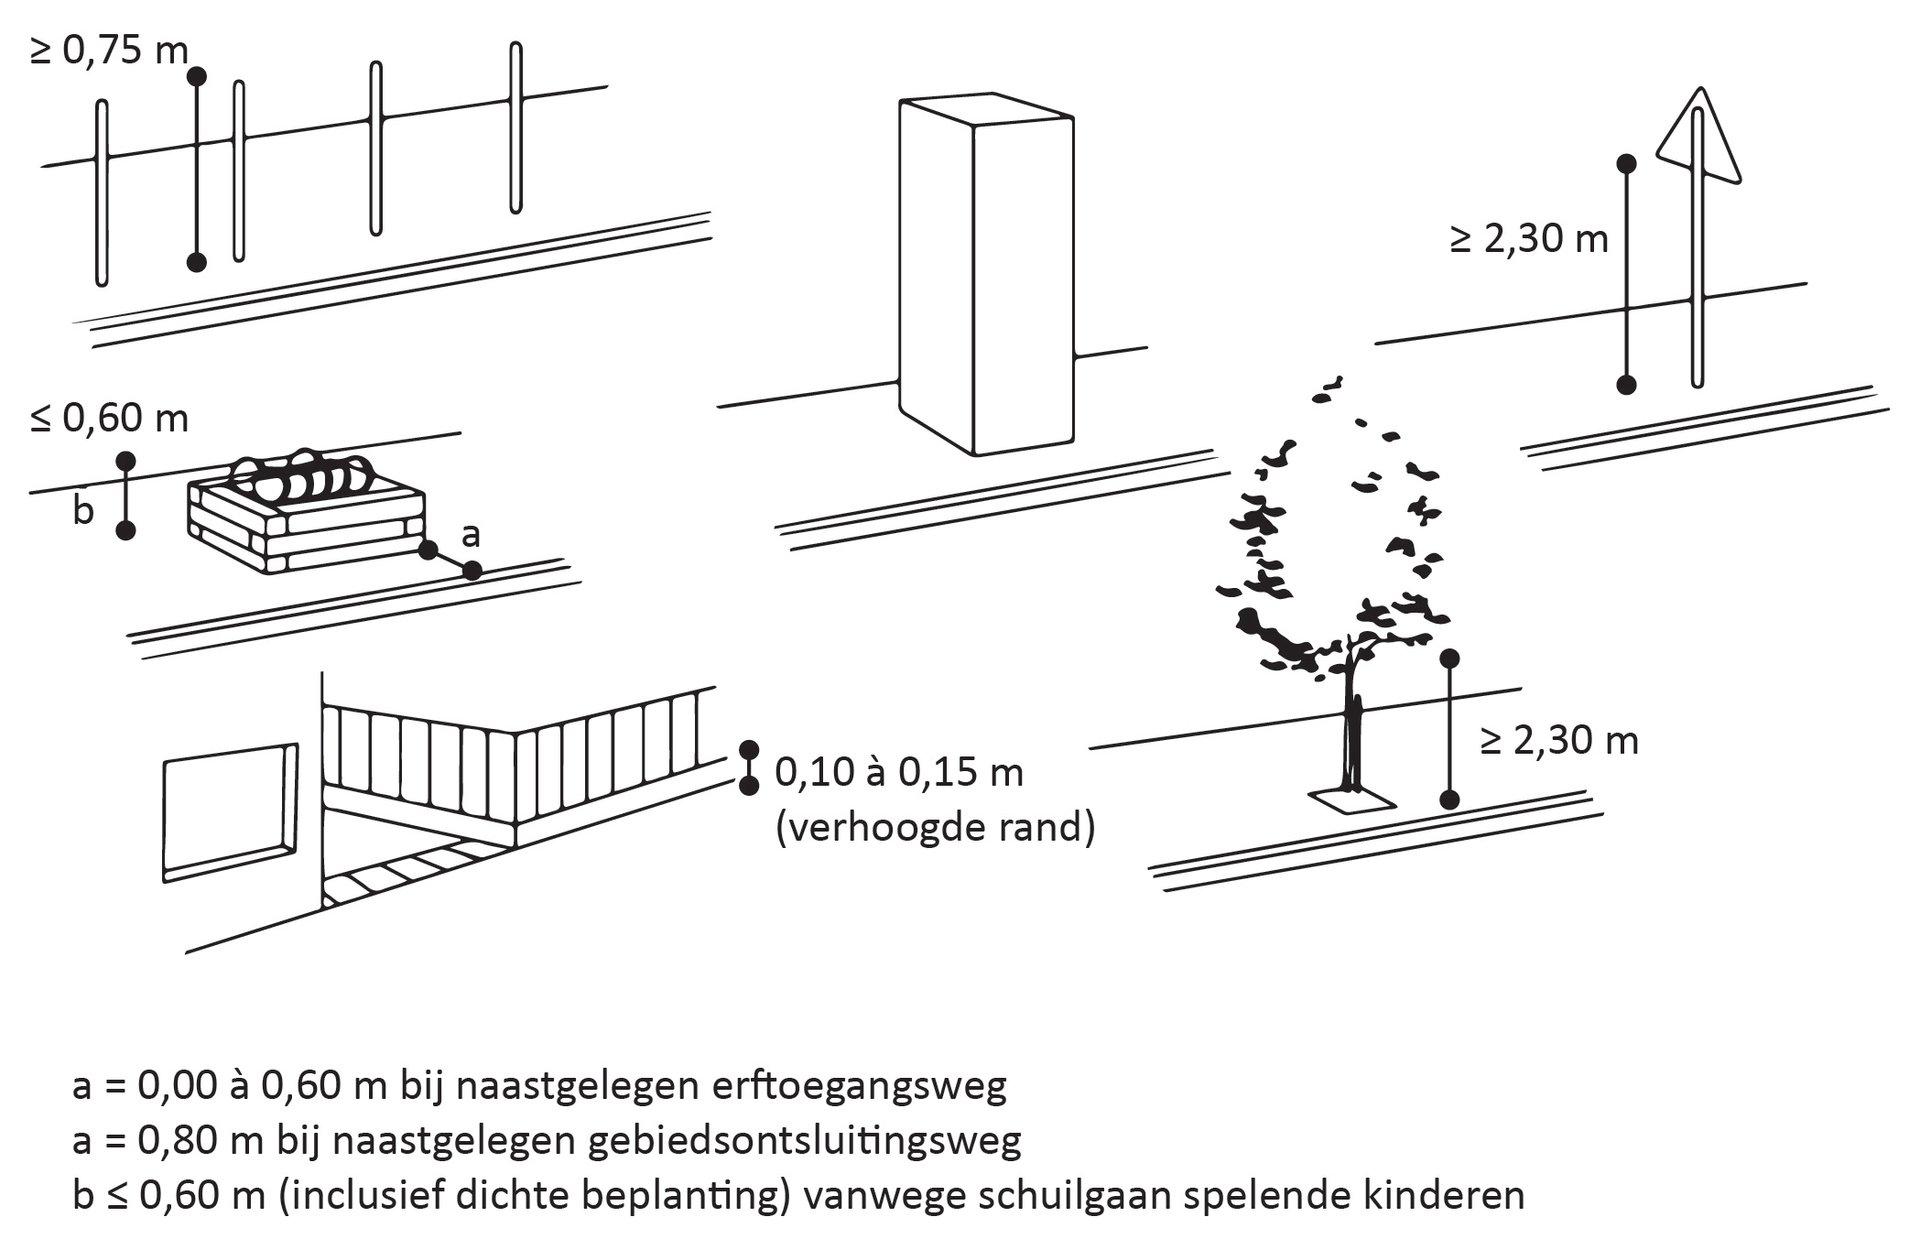 De tekening laat zien hoeveel vrije hoogte straatmeubilair nodig heeft, zoals een boom of verkeersbord.